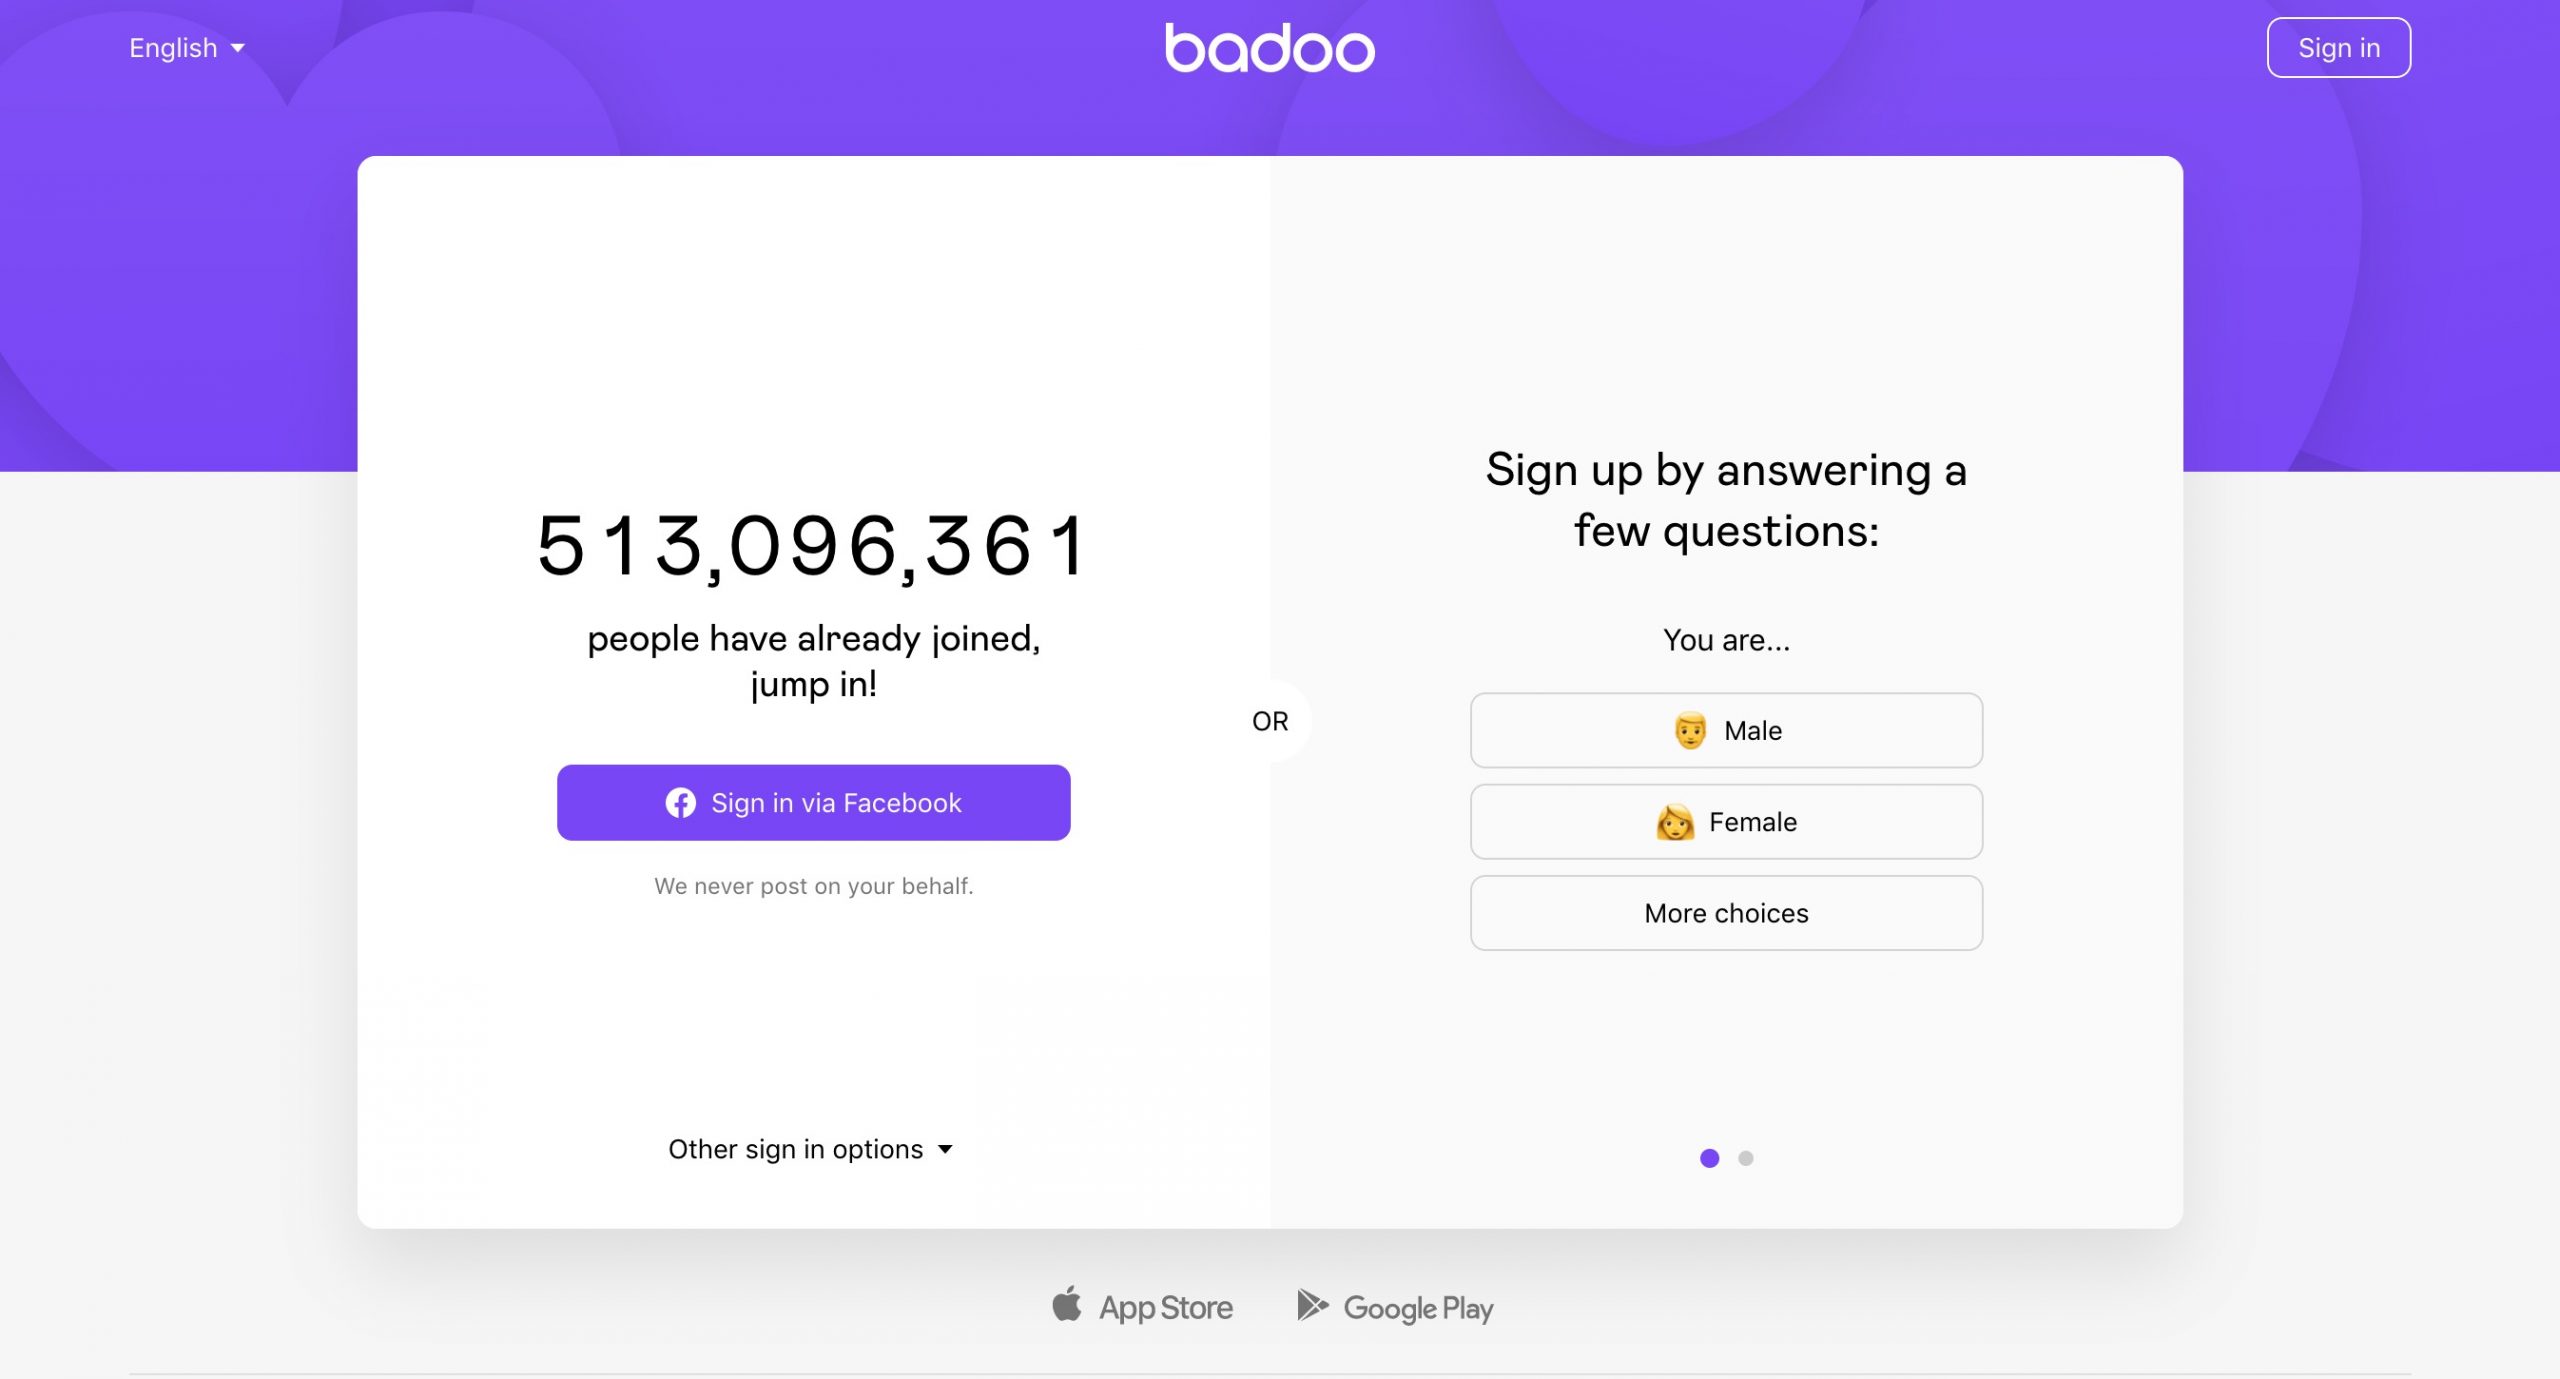 Badoo main page